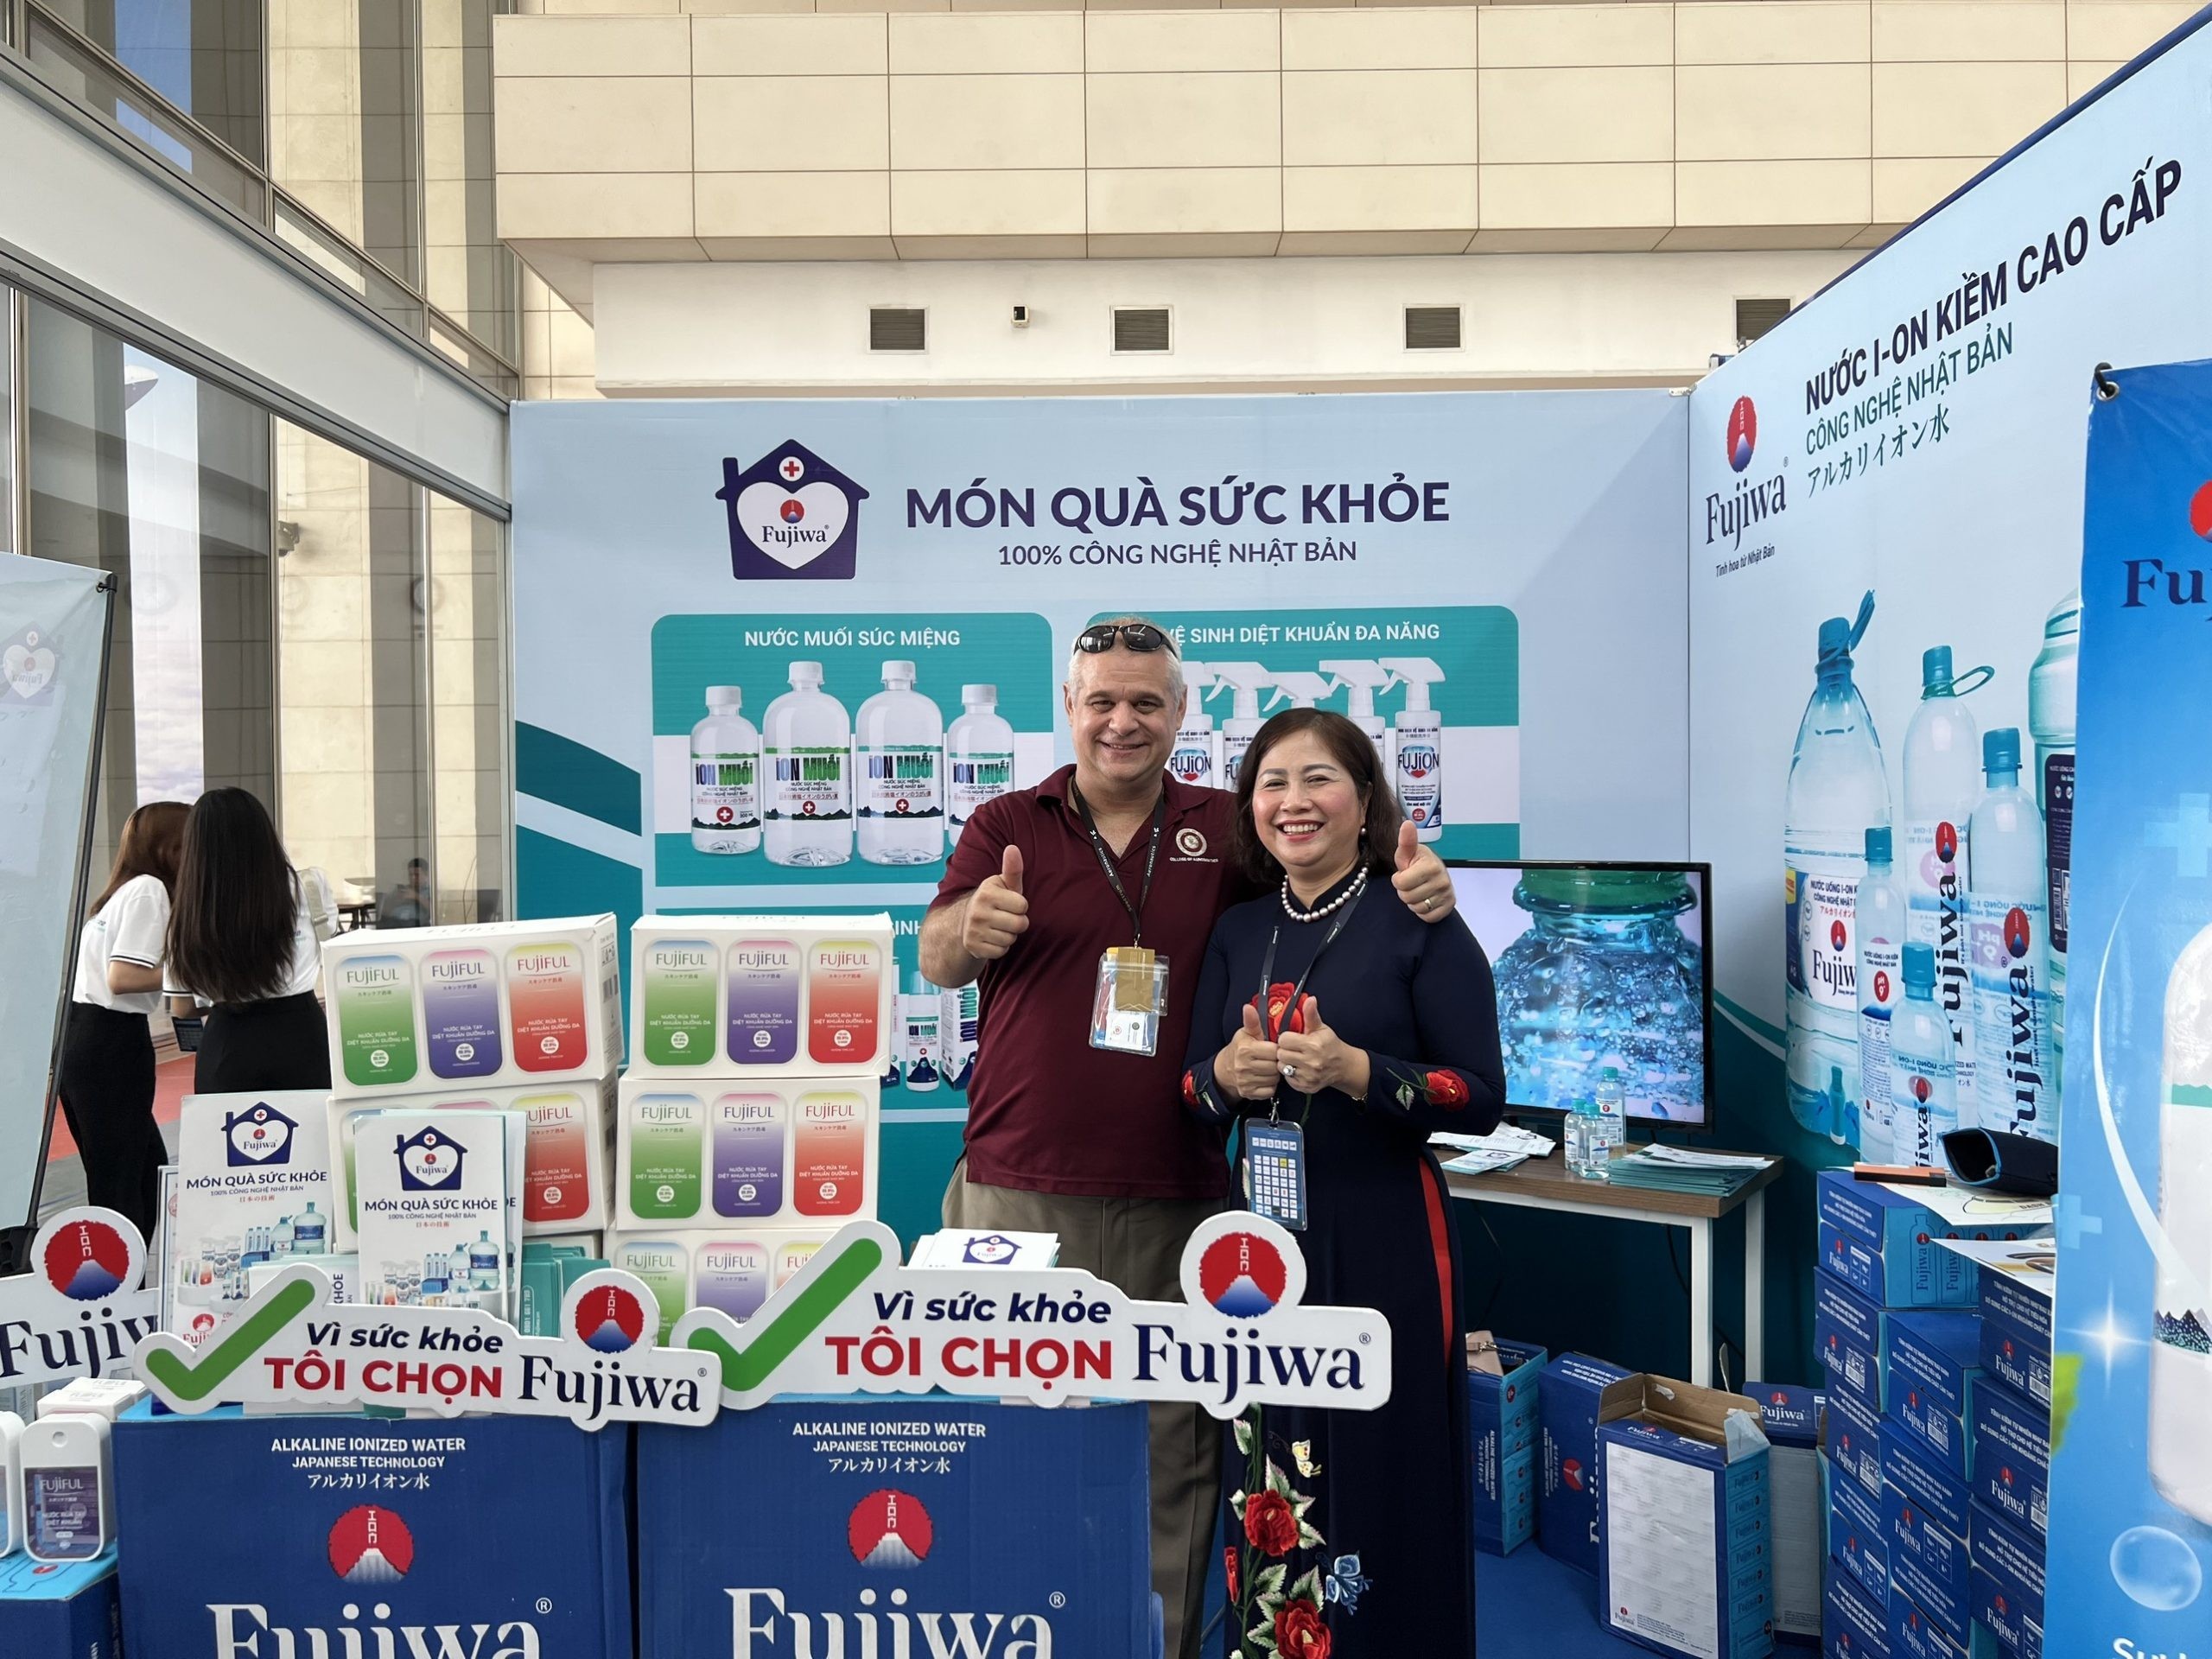 
CEO Fujiwa Việt Nam đã nghiên cứu và chuyển giao máy móc, công nghệ sản xuất nước uống ion kiềm từ Nhật Bản, mong muốn có thể mở rộng mạng lưới nước sạch đến tay người tiêu dùng. Ảnh: Nguonluc
